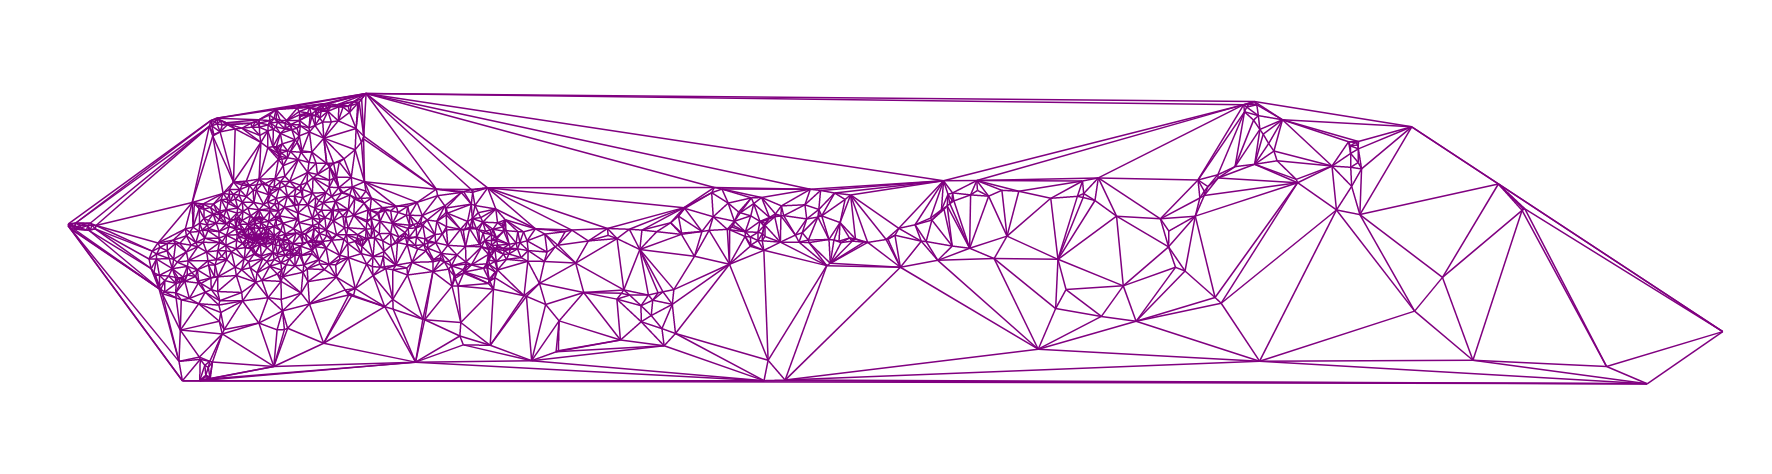 Алгоритм триангуляции Делоне методом заметающей прямой - 34